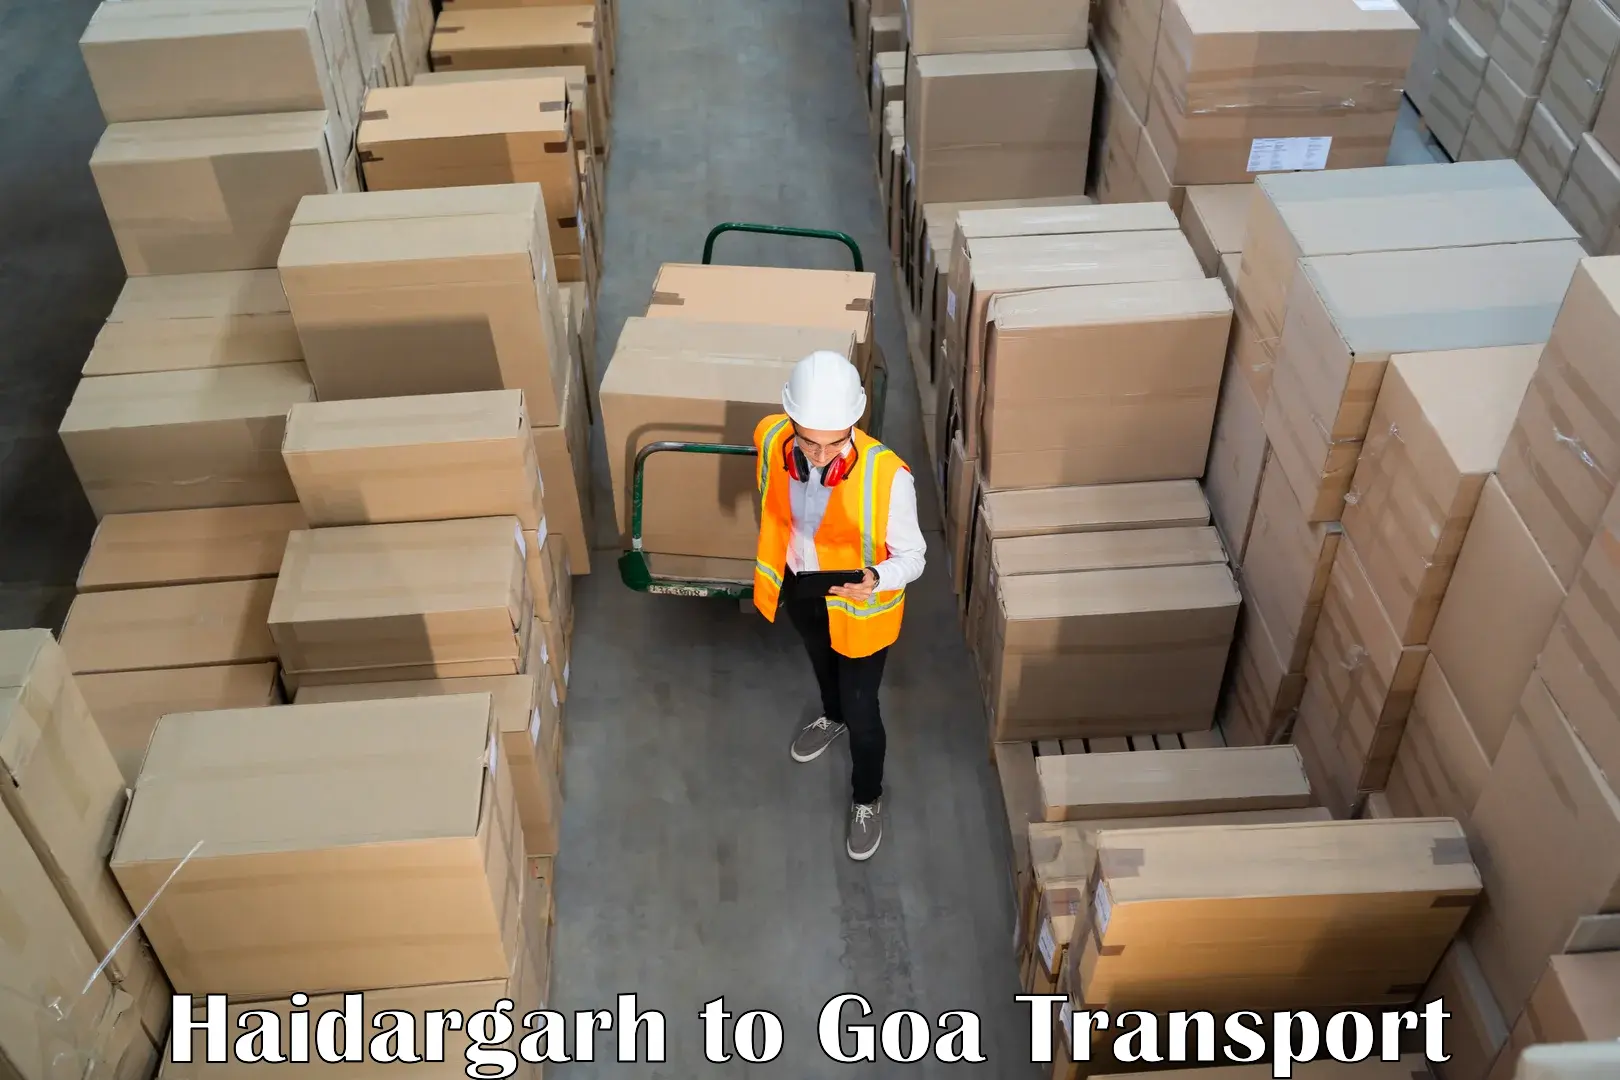 Online transport booking Haidargarh to Ponda